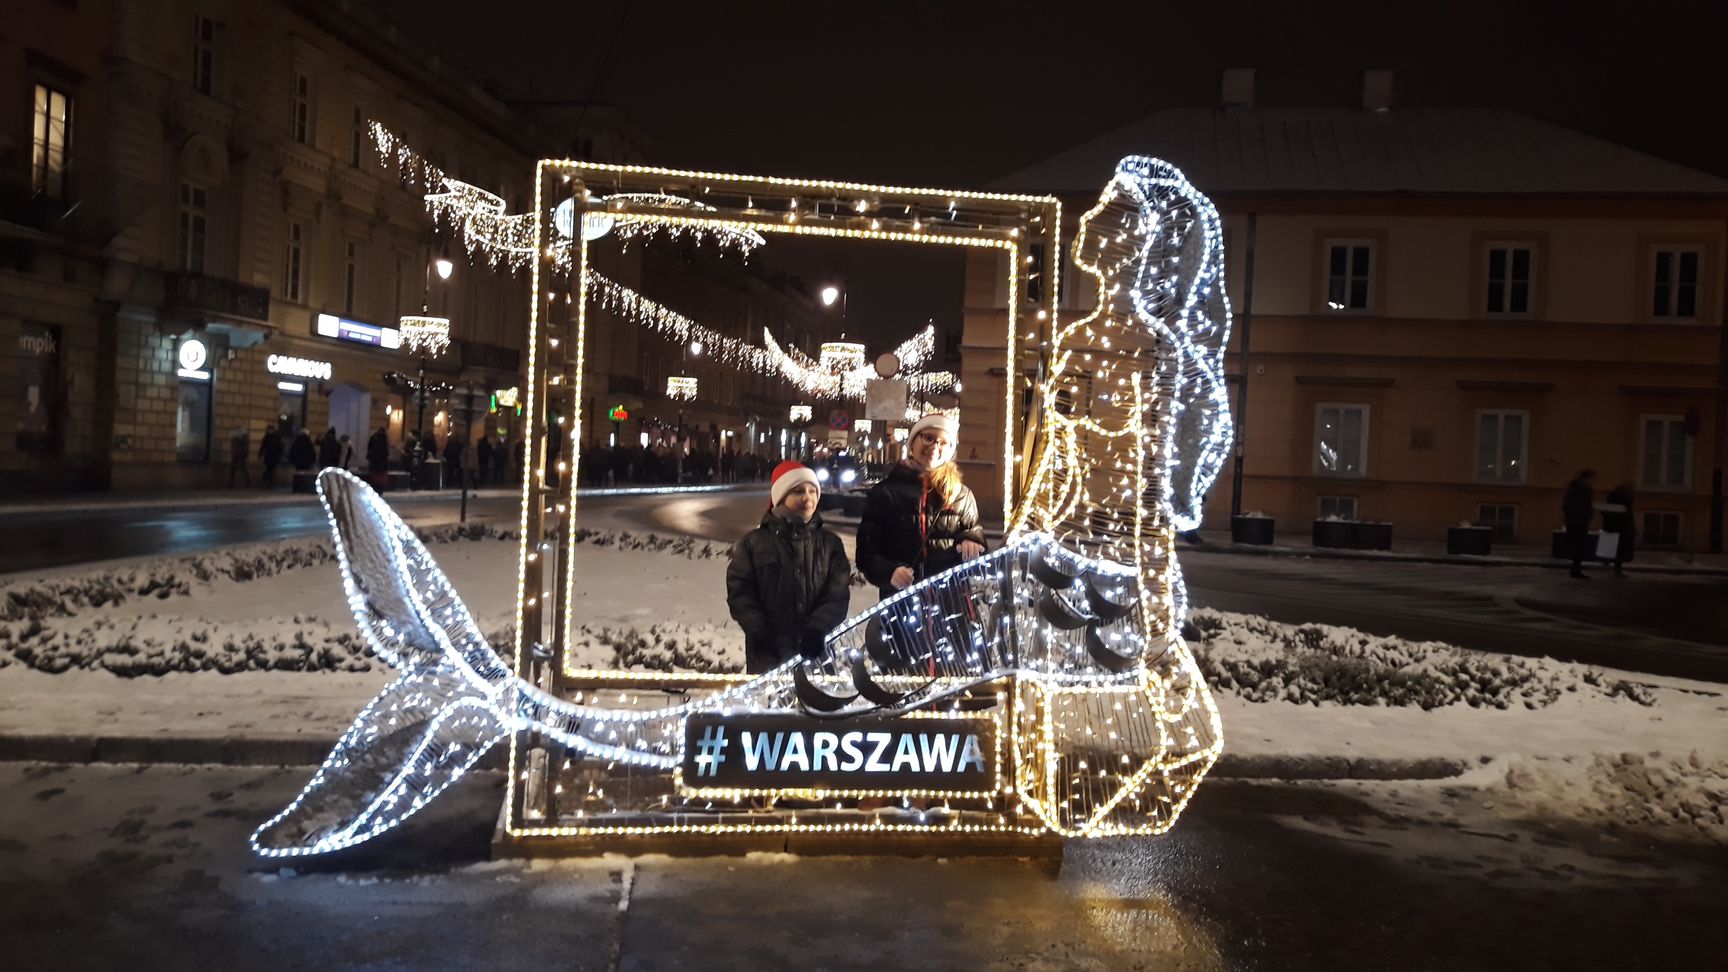 Świąteczna Iluminacja Warszawa 2019 - darmowe atrakcje dla dzieci w Warszawie - Rodzinny Kompas 18